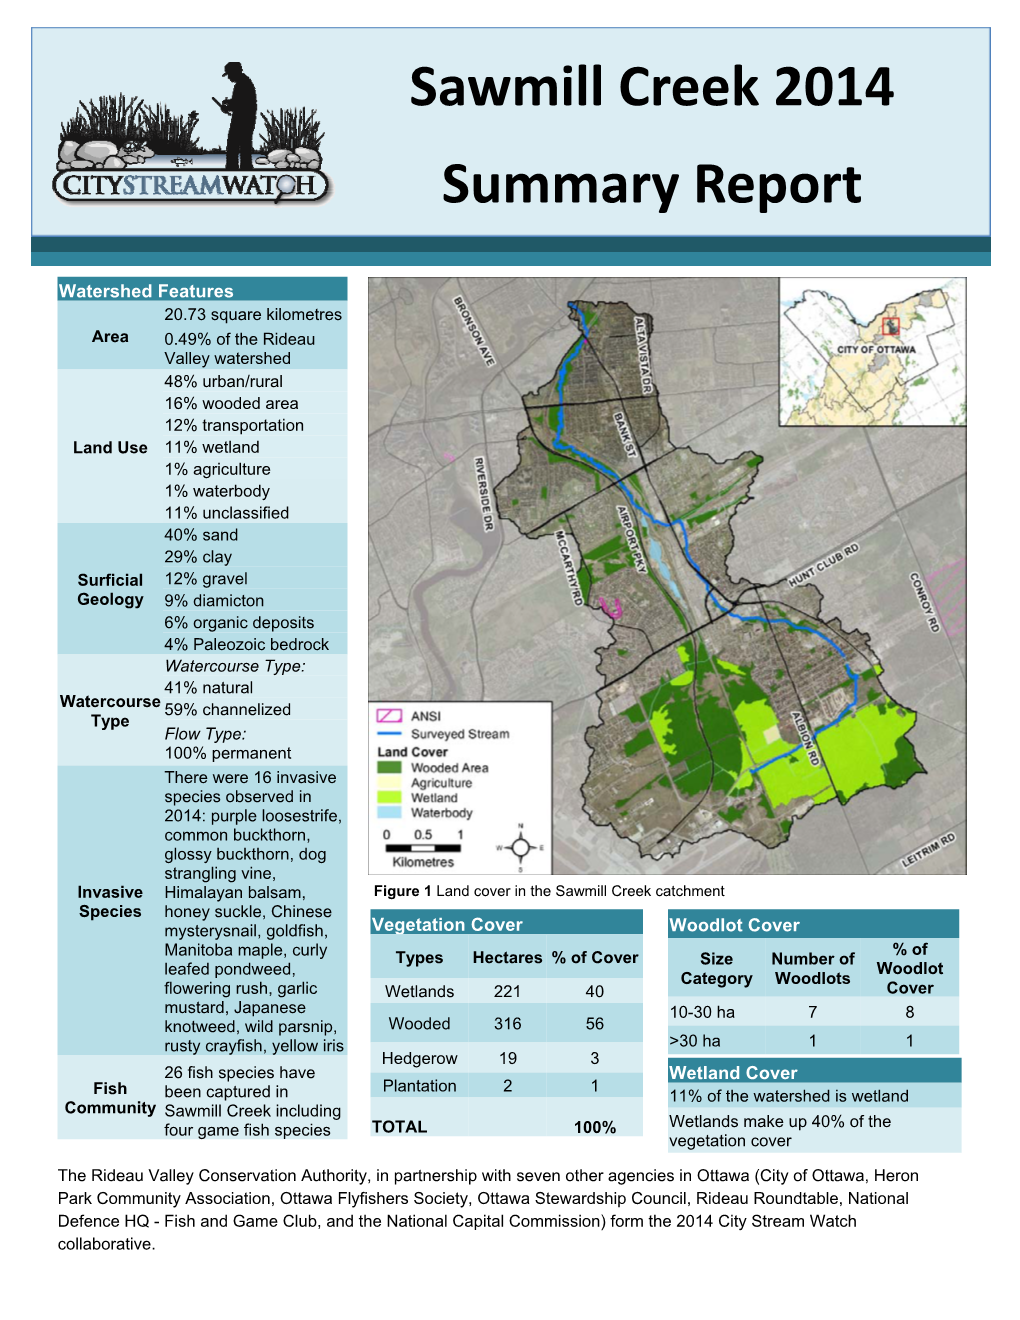 Sawmill Creek 2014 Summary Report